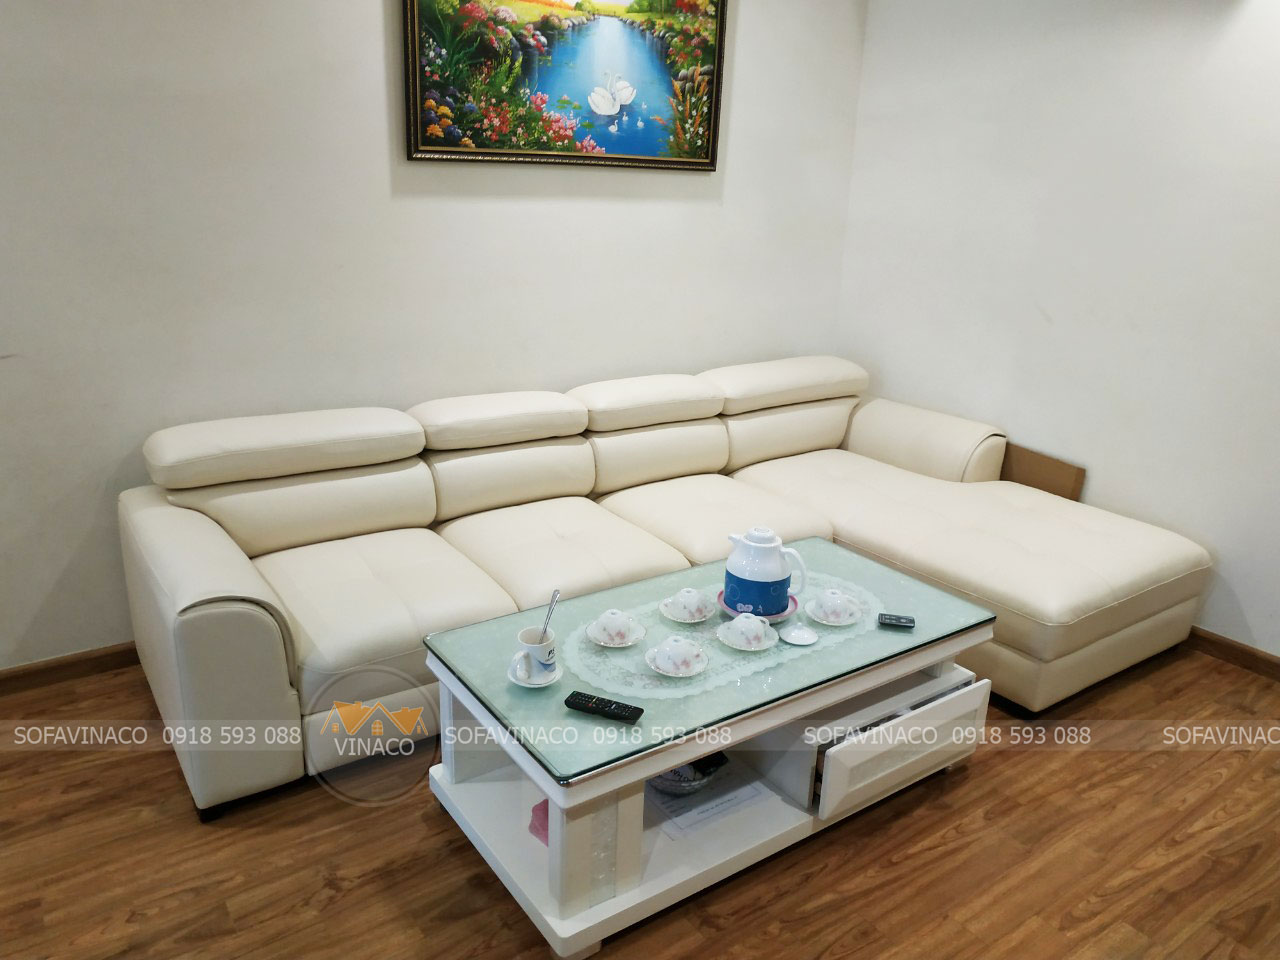 Top 5 chất liệu vải bọc ghế sofa được sử dụng phổ biến tại Sofavinaco